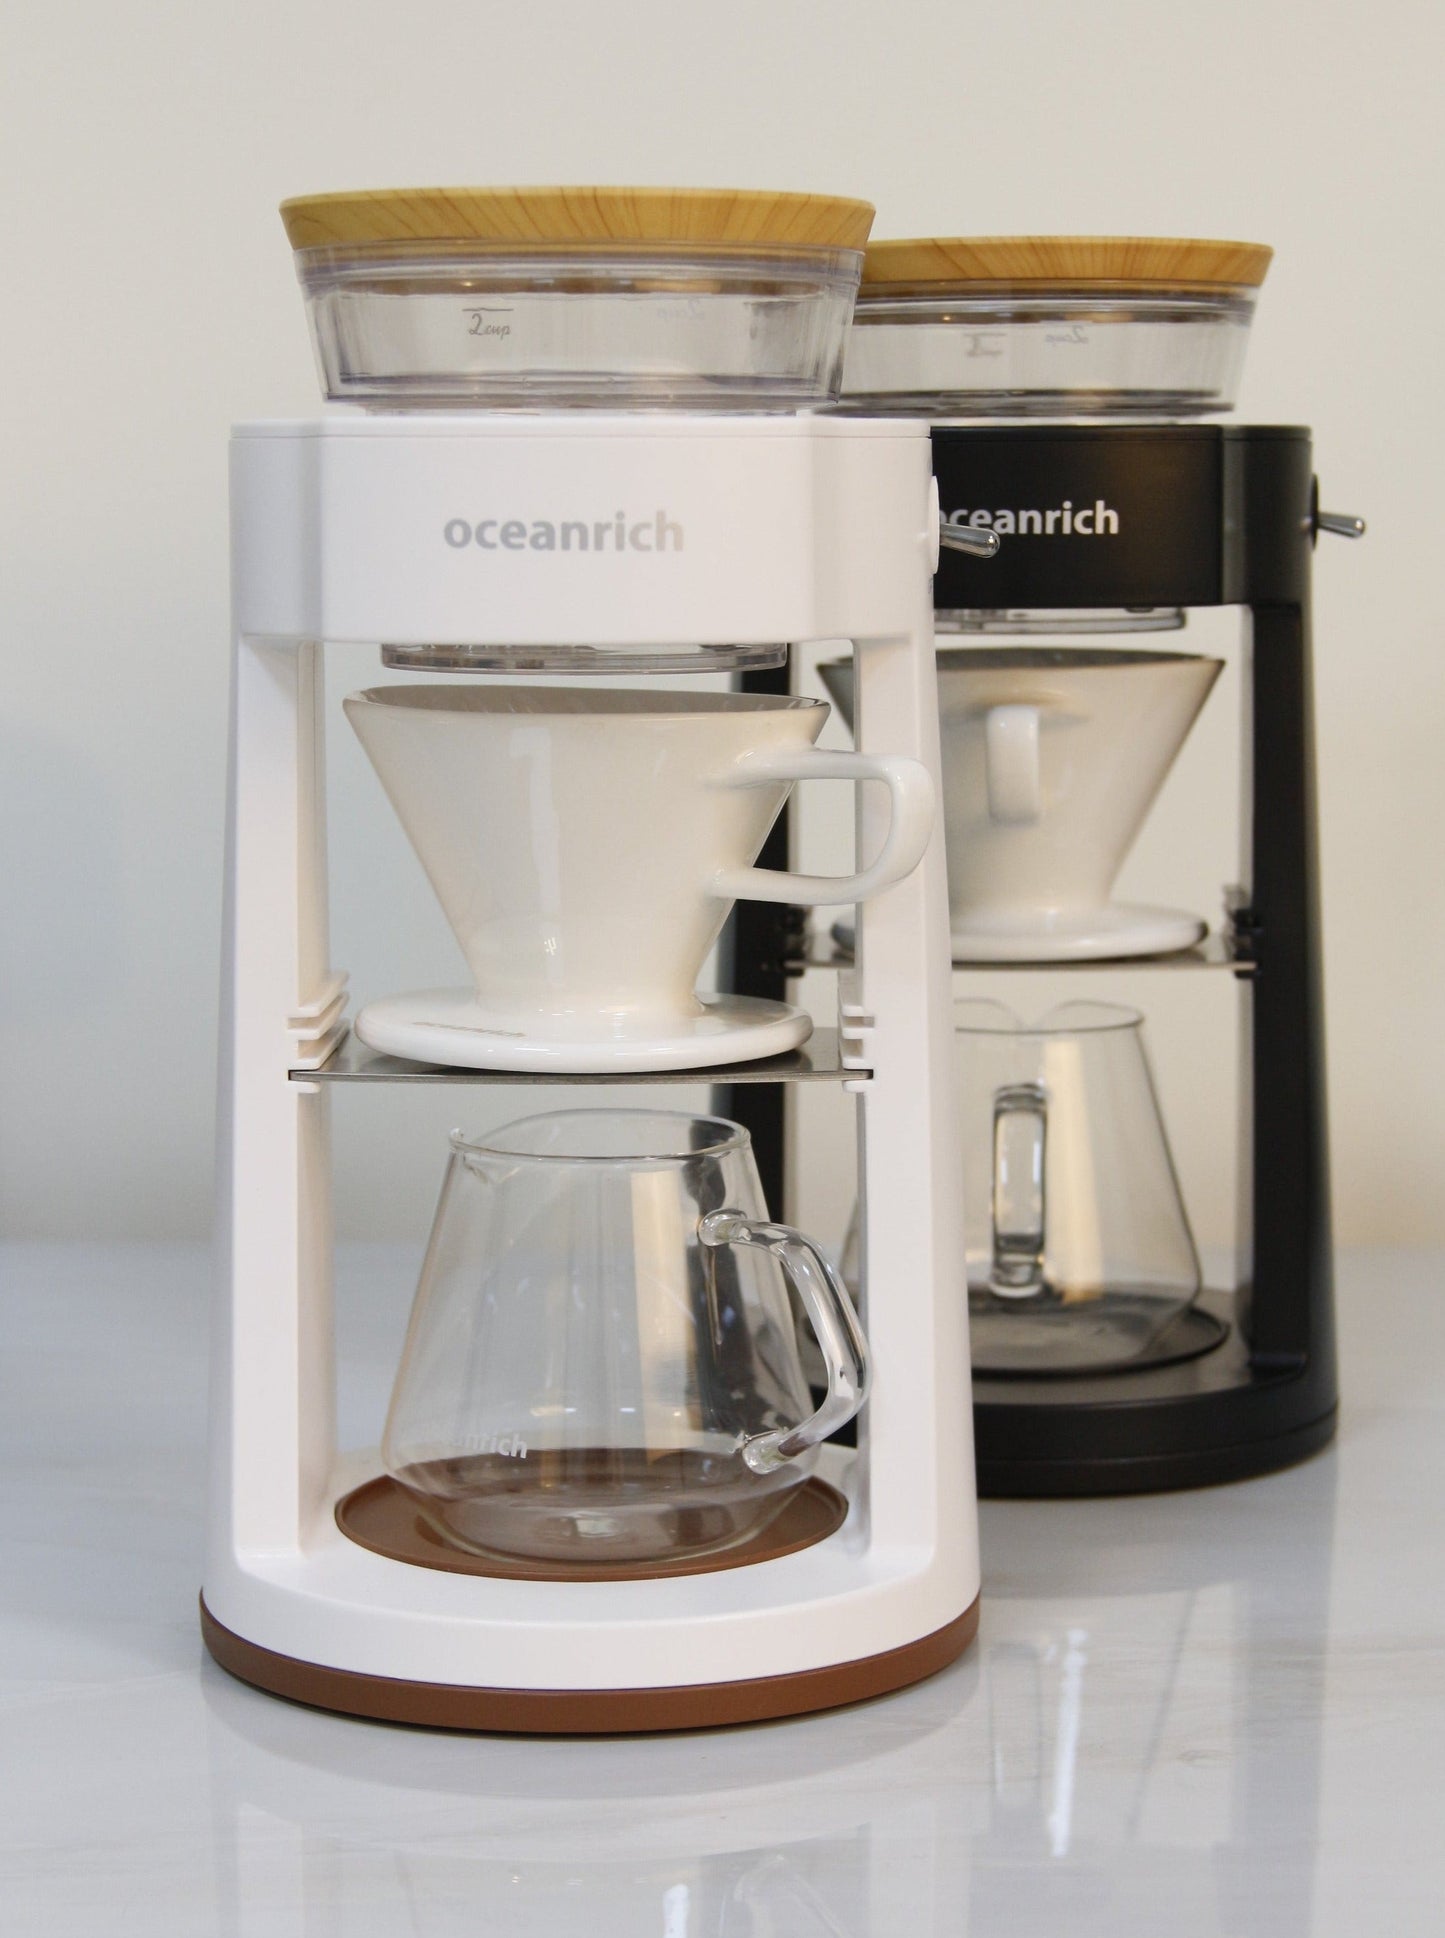 أشتري الآن جهاز القهوة المقطرة أداة التقطير الذاتية من أوشن ريتش oceanrich واستمتع بأفضل قهوة